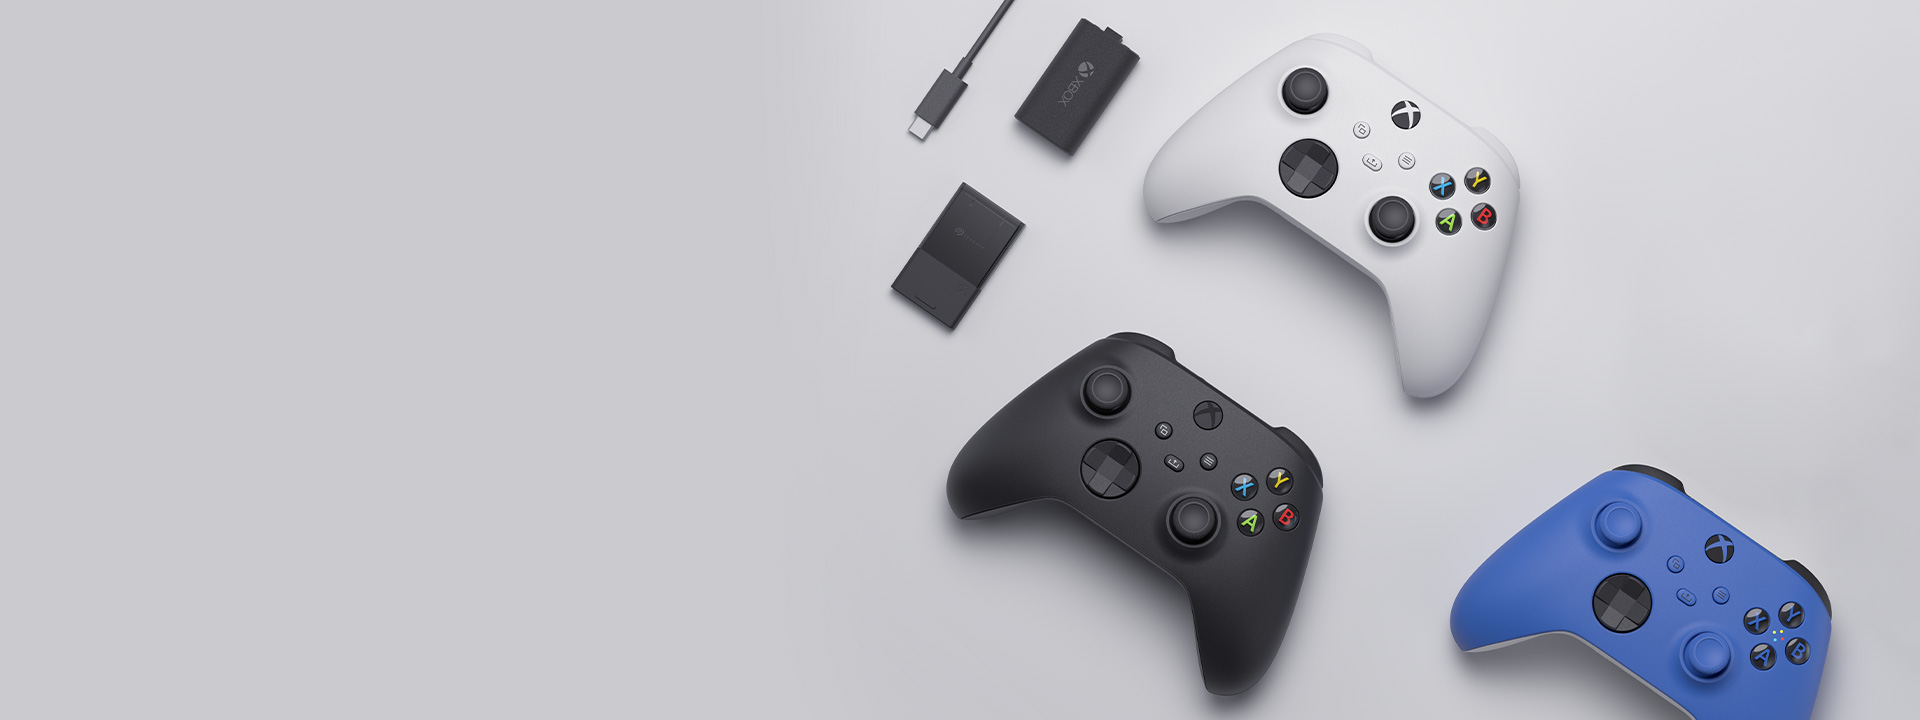 Różne akcesoria Xbox, w tym kontroler bezprzewodowy Xbox, zestaw Play and Charge oraz karta rozszerzeń pamięci masowej Seagate do konsoli Xbox Series X|S rozmieszczone obok siebie.